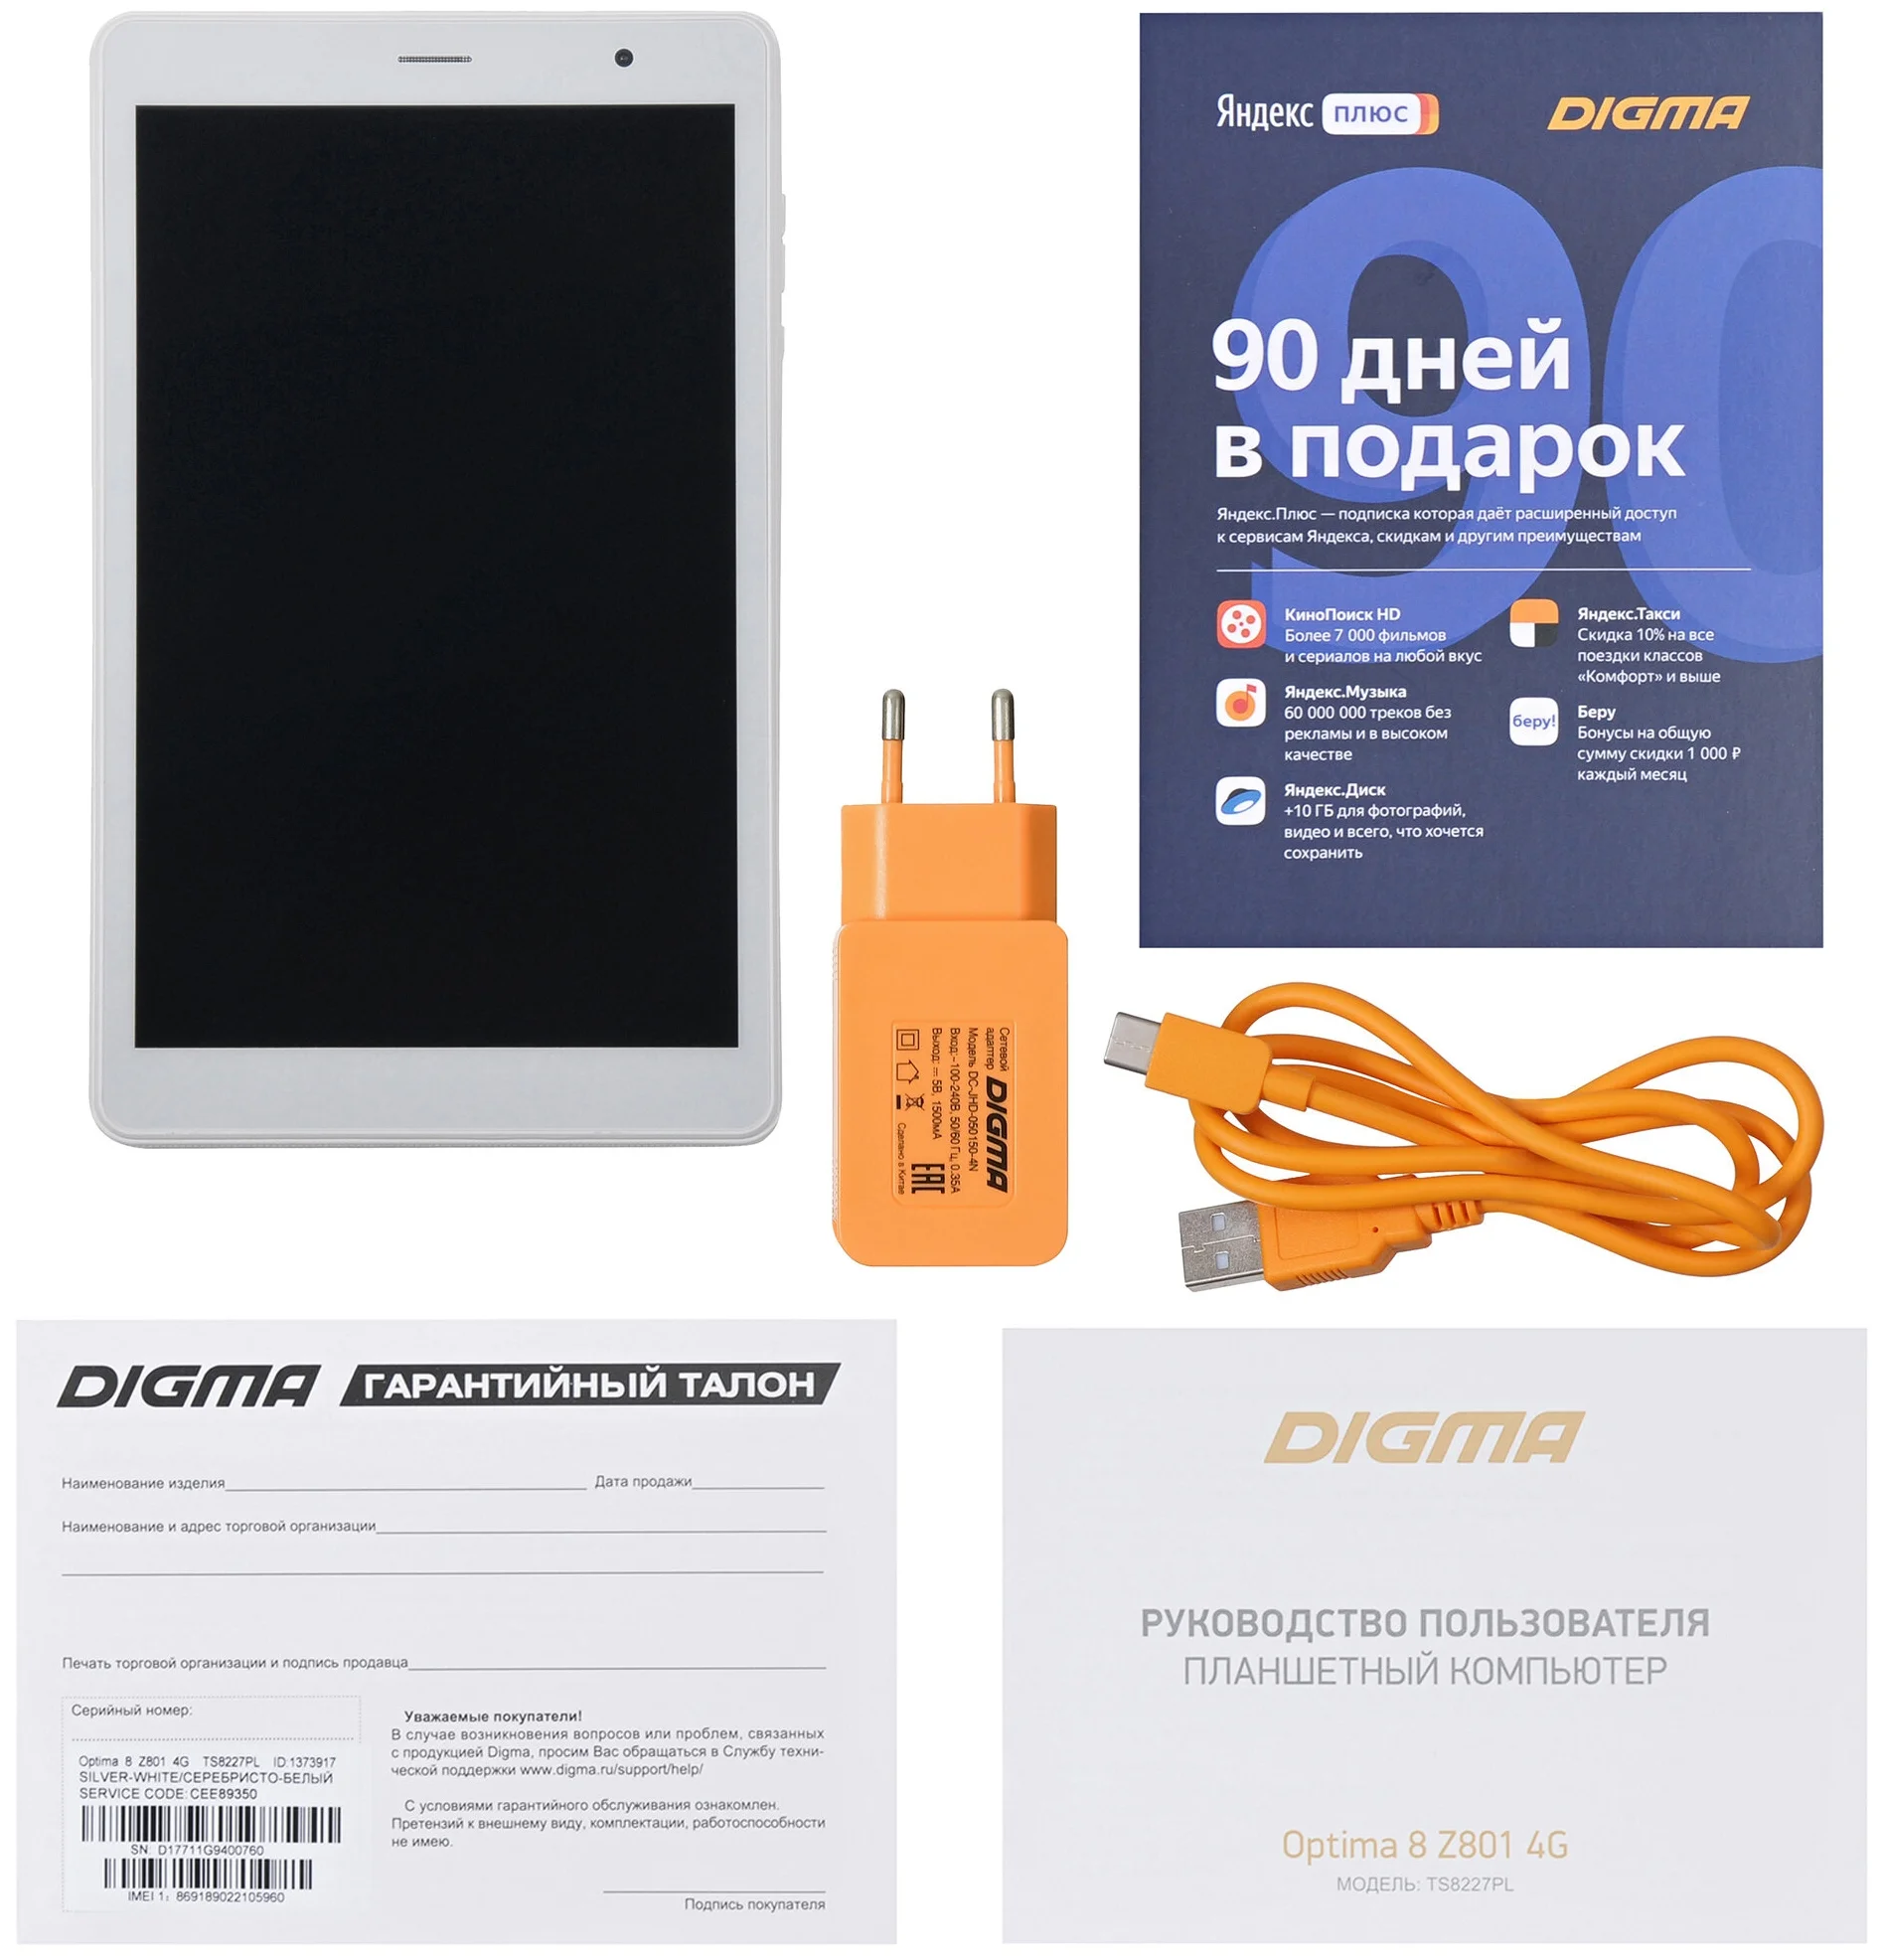 DIGMA Optima 8 Z801 4G - беспроводные интерфейсы: 4G LTE, WiFi 802.11n, Bluetooth 4.2